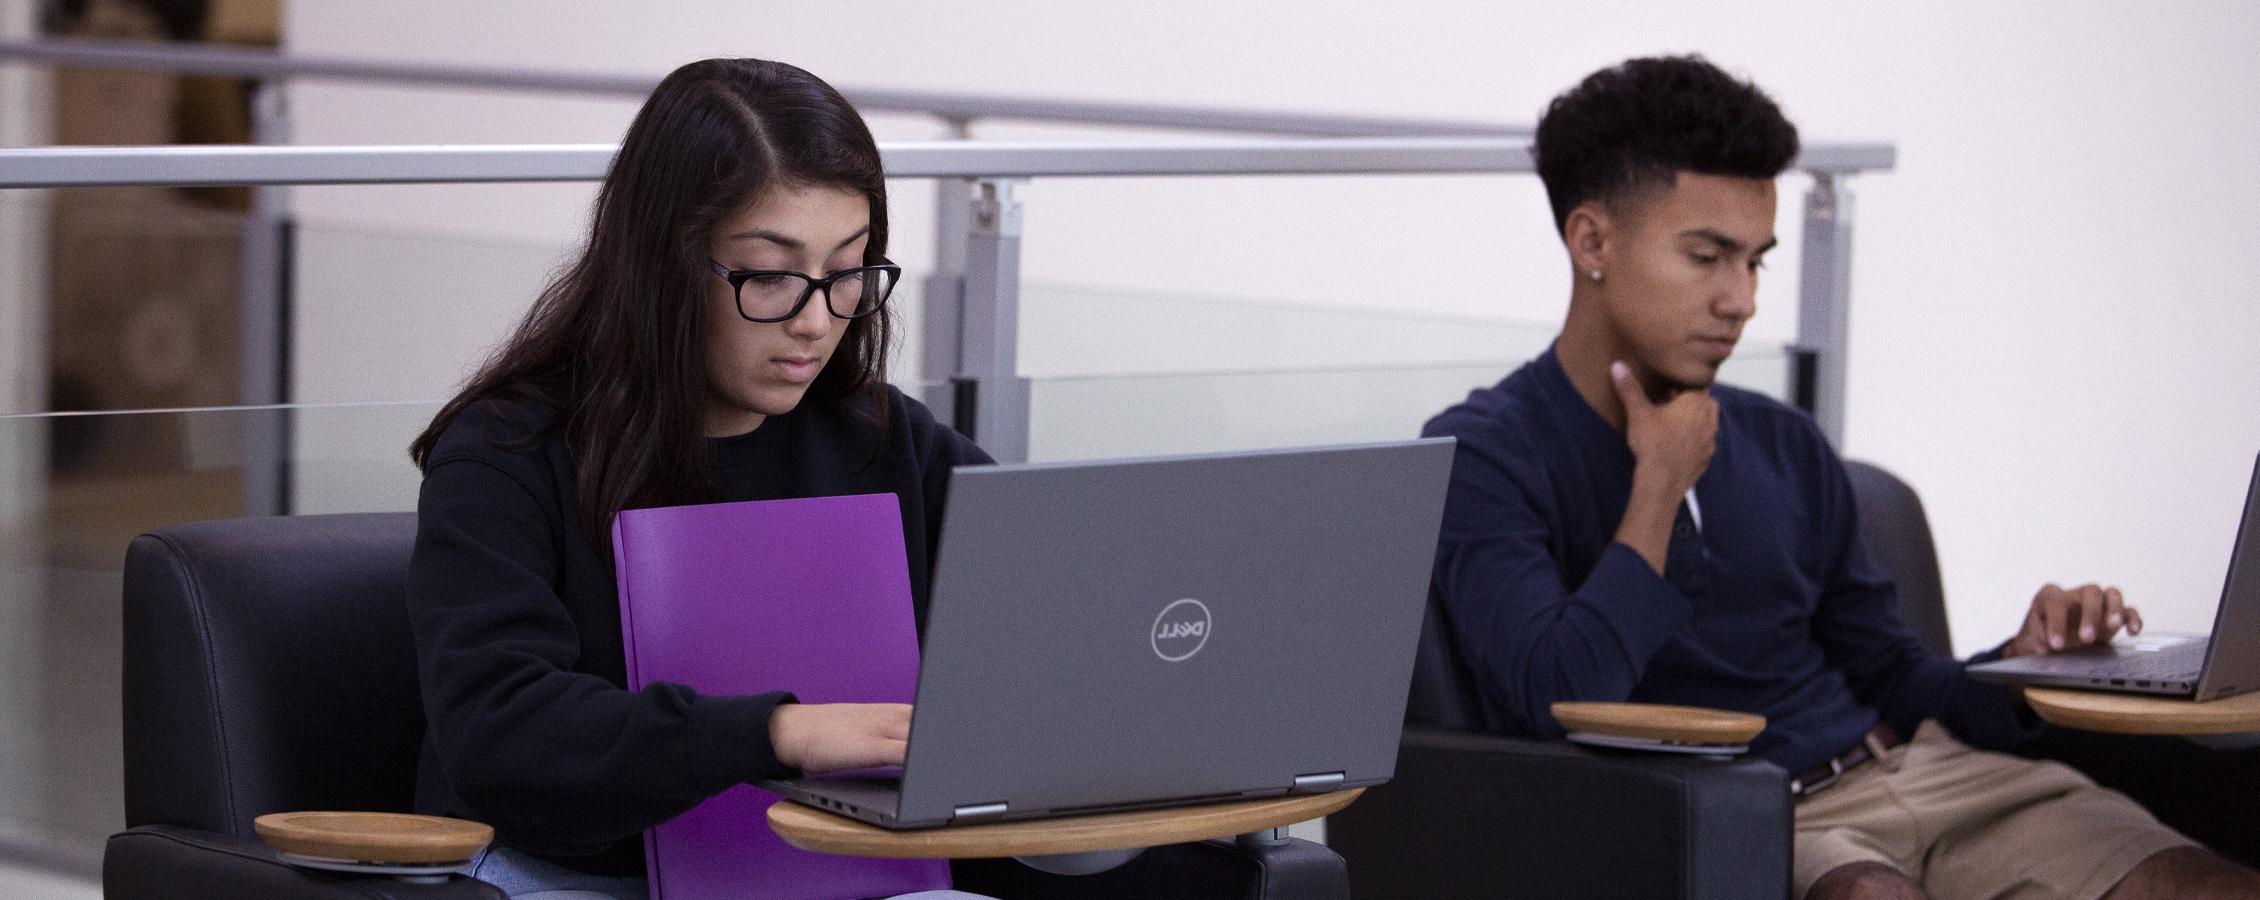 两名学生在会议室用笔记本电脑工作.